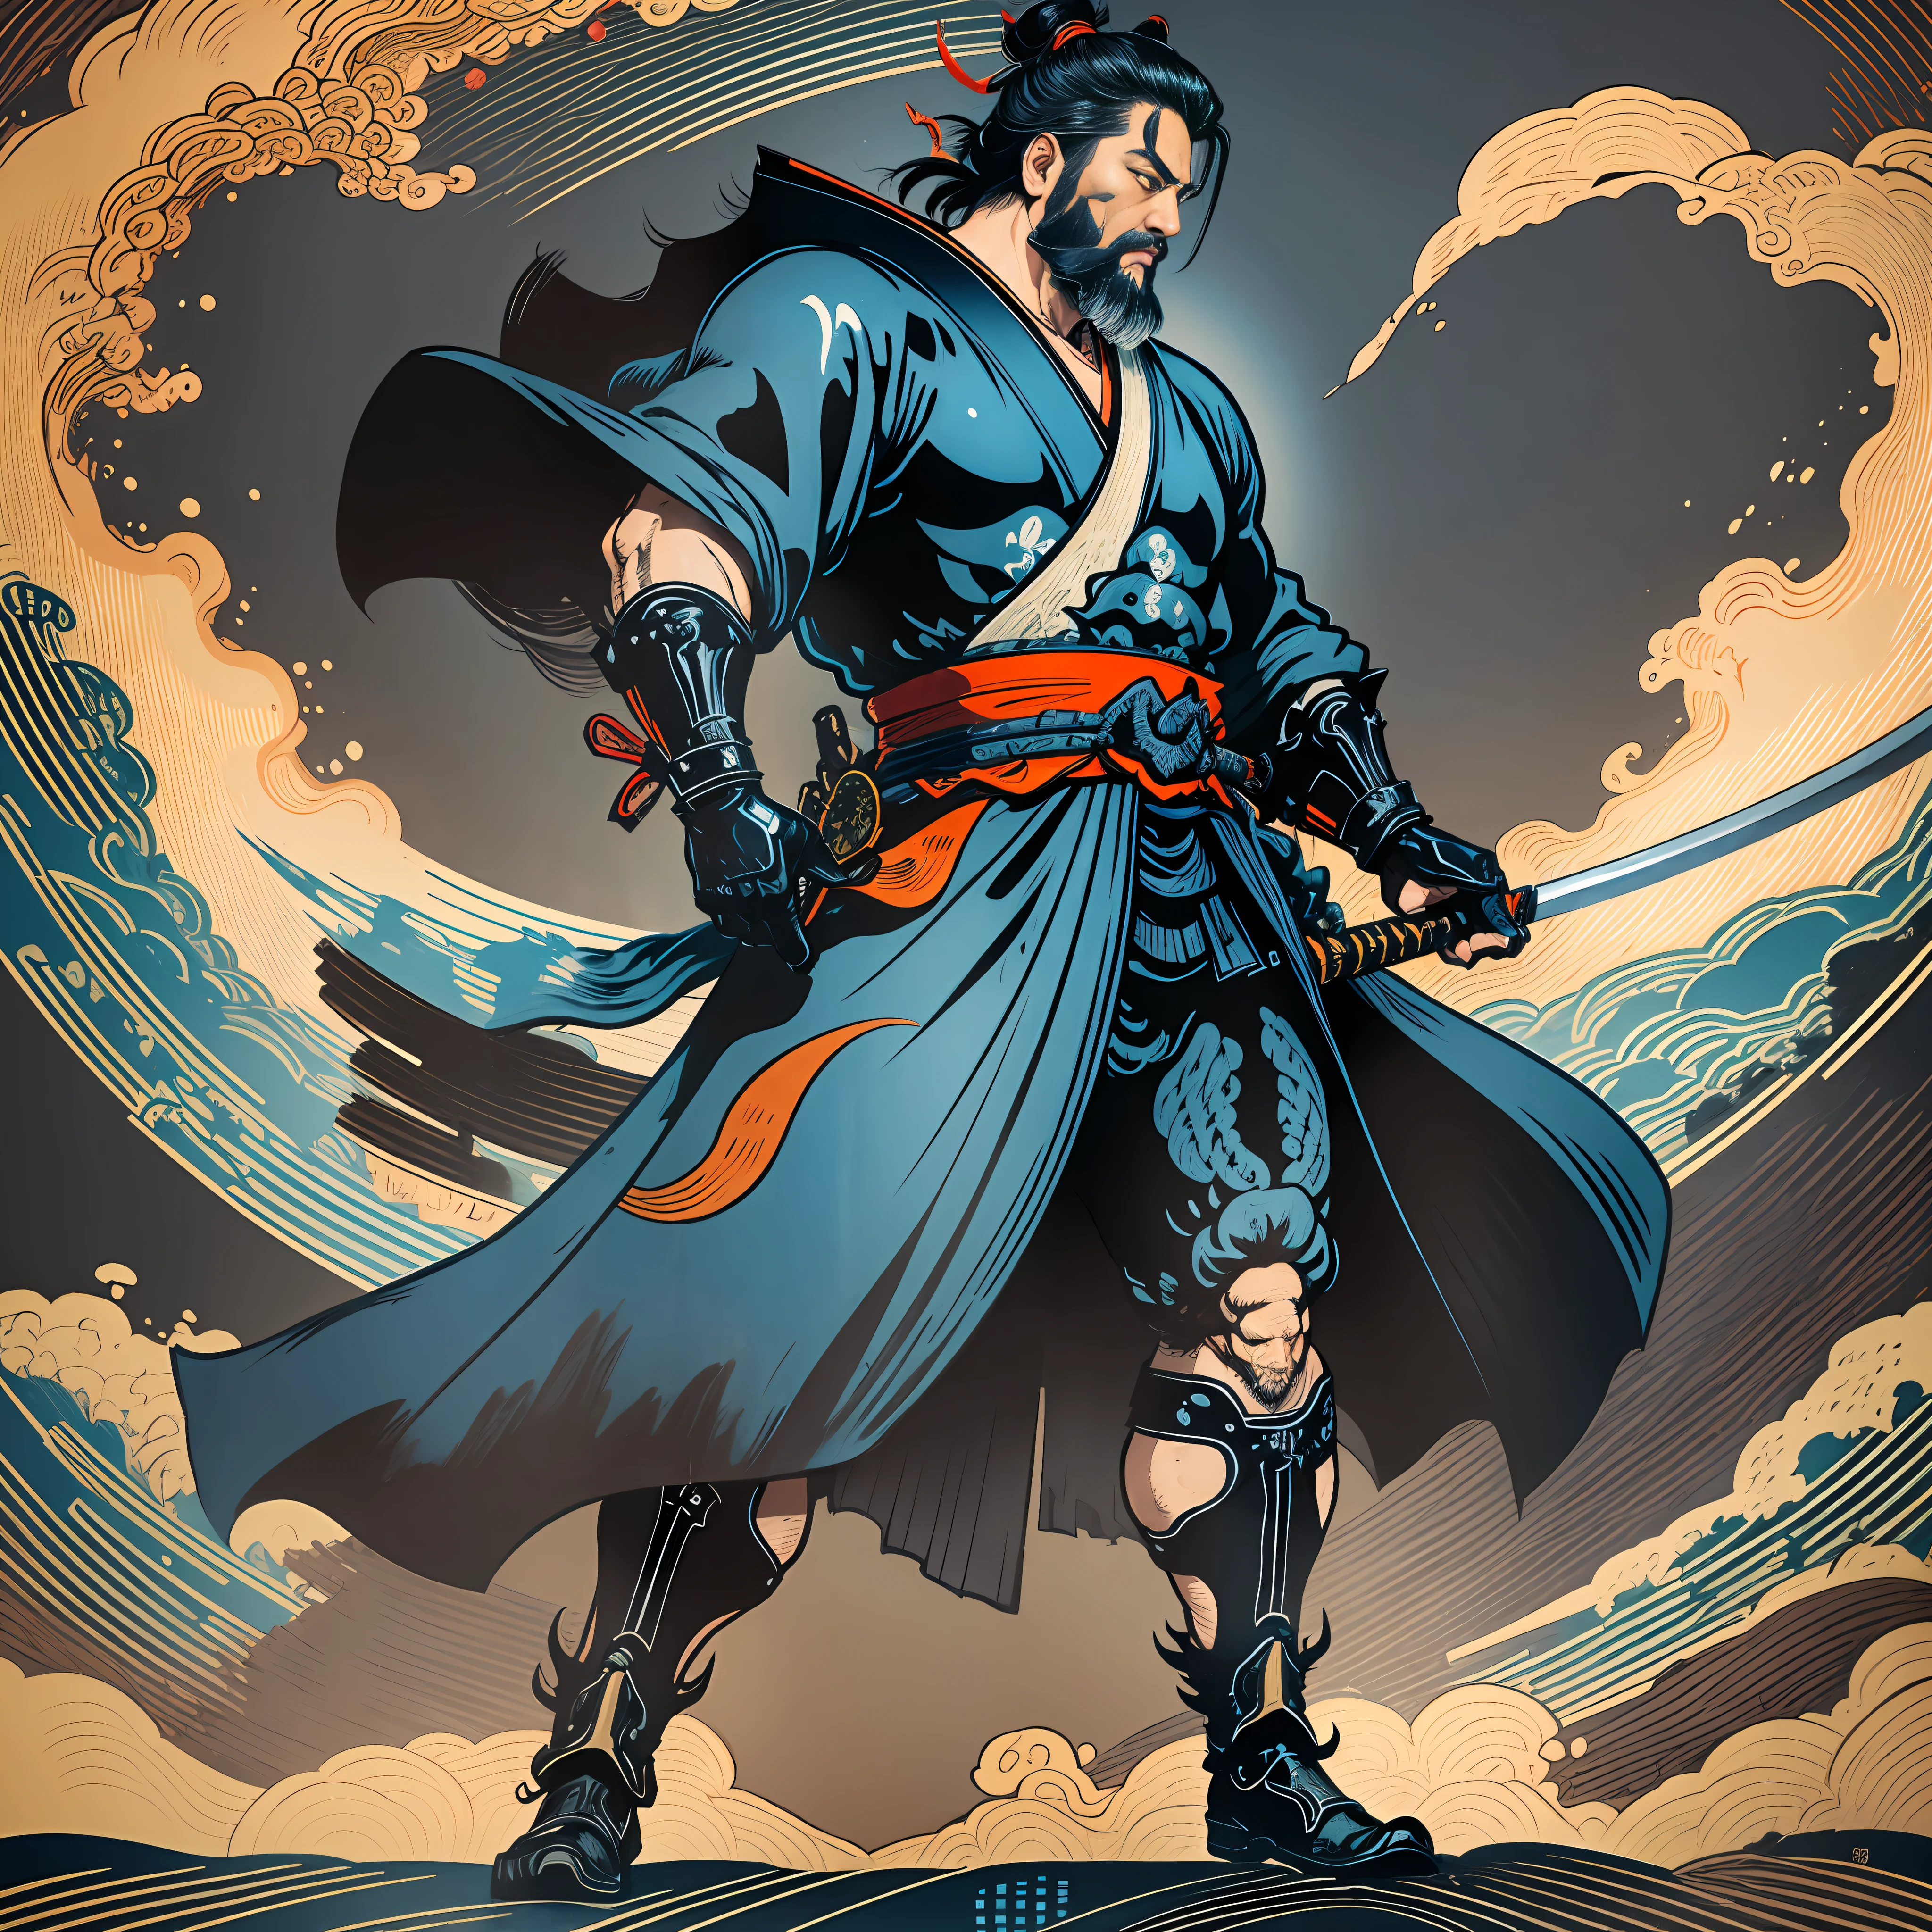 Es una pintura de cuerpo entero con colores naturales con dibujos lineales al estilo Katsushika Hokusai.. El espadachín Miyamoto Musashi tiene un cuerpo grande como el de un hombre fuerte.. Samurái de Japón. Con una expresión de determinación digna pero varonil., se enfrenta a los espíritus malignos. Tiene el pelo corto negro y un pelo corto., barba recortada. La parte superior de su cuerpo está cubierta con un kimono negro azabache con una textura brillante., y su hakama es hasta las rodillas. En su mano derecha sostiene una espada japonesa con una parte más larga.. En la más alta calidad, obra maestra de alta resolución estilo ukiyo-e relámpagos y llamas arremolinadas. Entre ellos, Miyamoto Musashi está de pie con la espalda recta., mirando al frente.